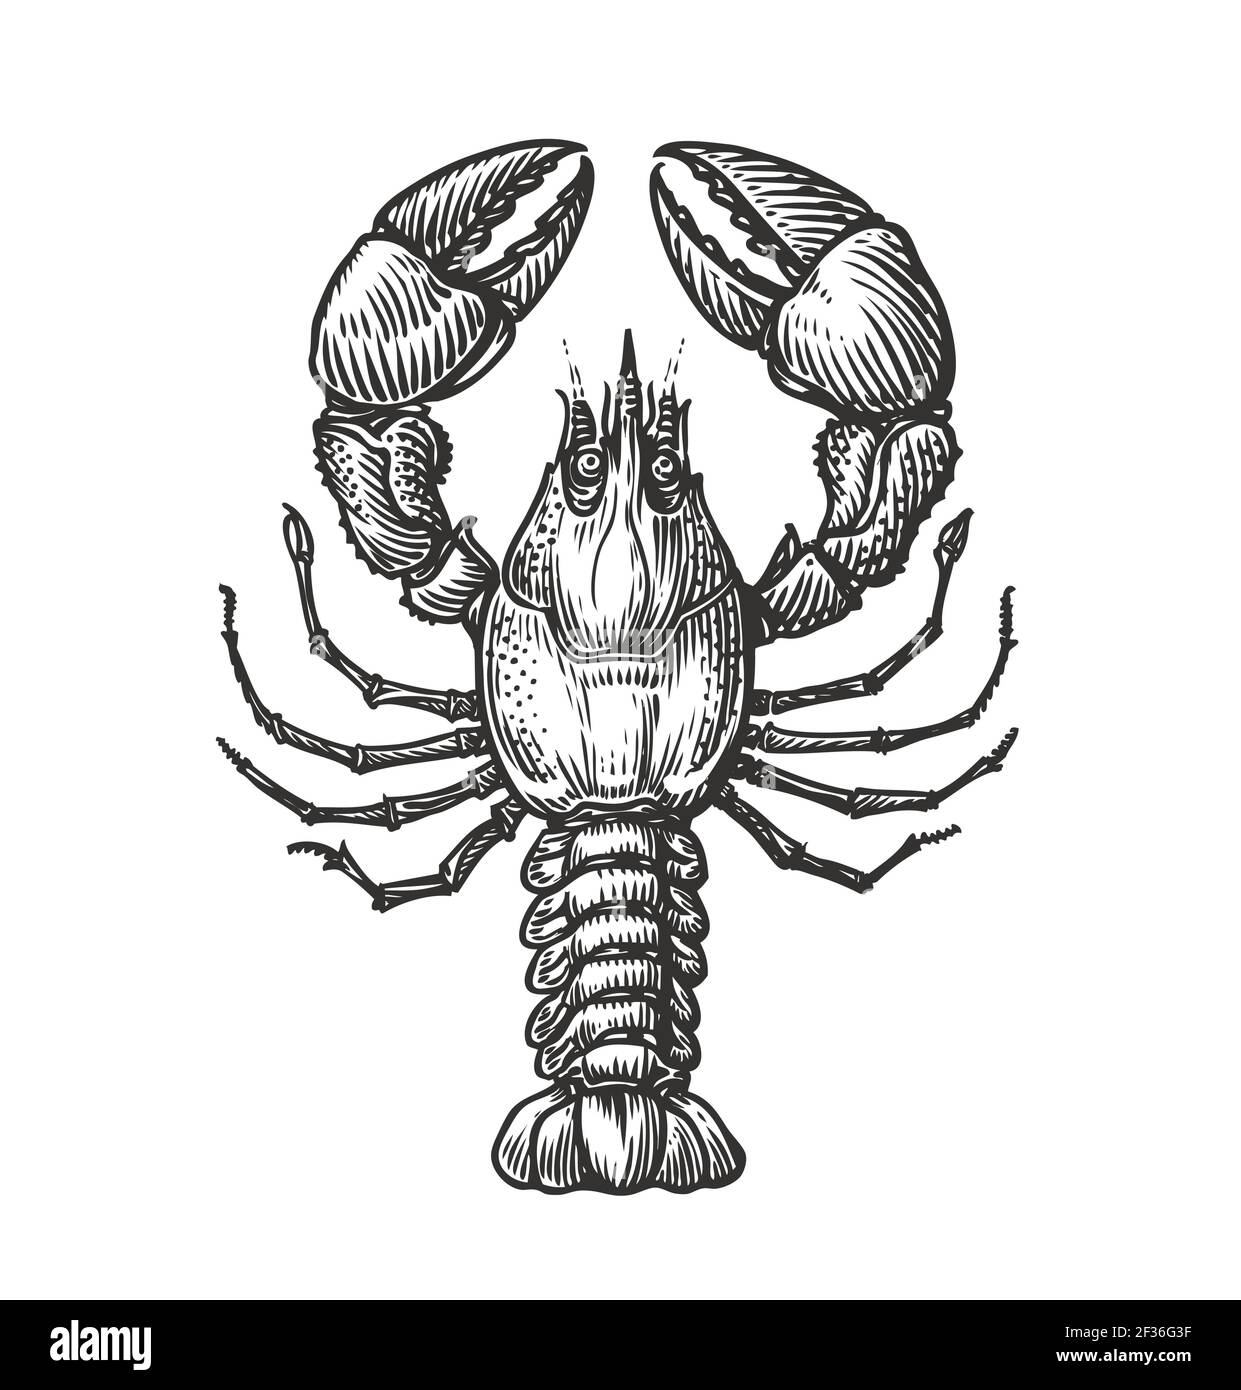 Zeichnung von Hummer für Menü oder Etikett. Meeresfrüchte im Vintage-Gravurstil. Skizzenvektordarstellung Stock Vektor